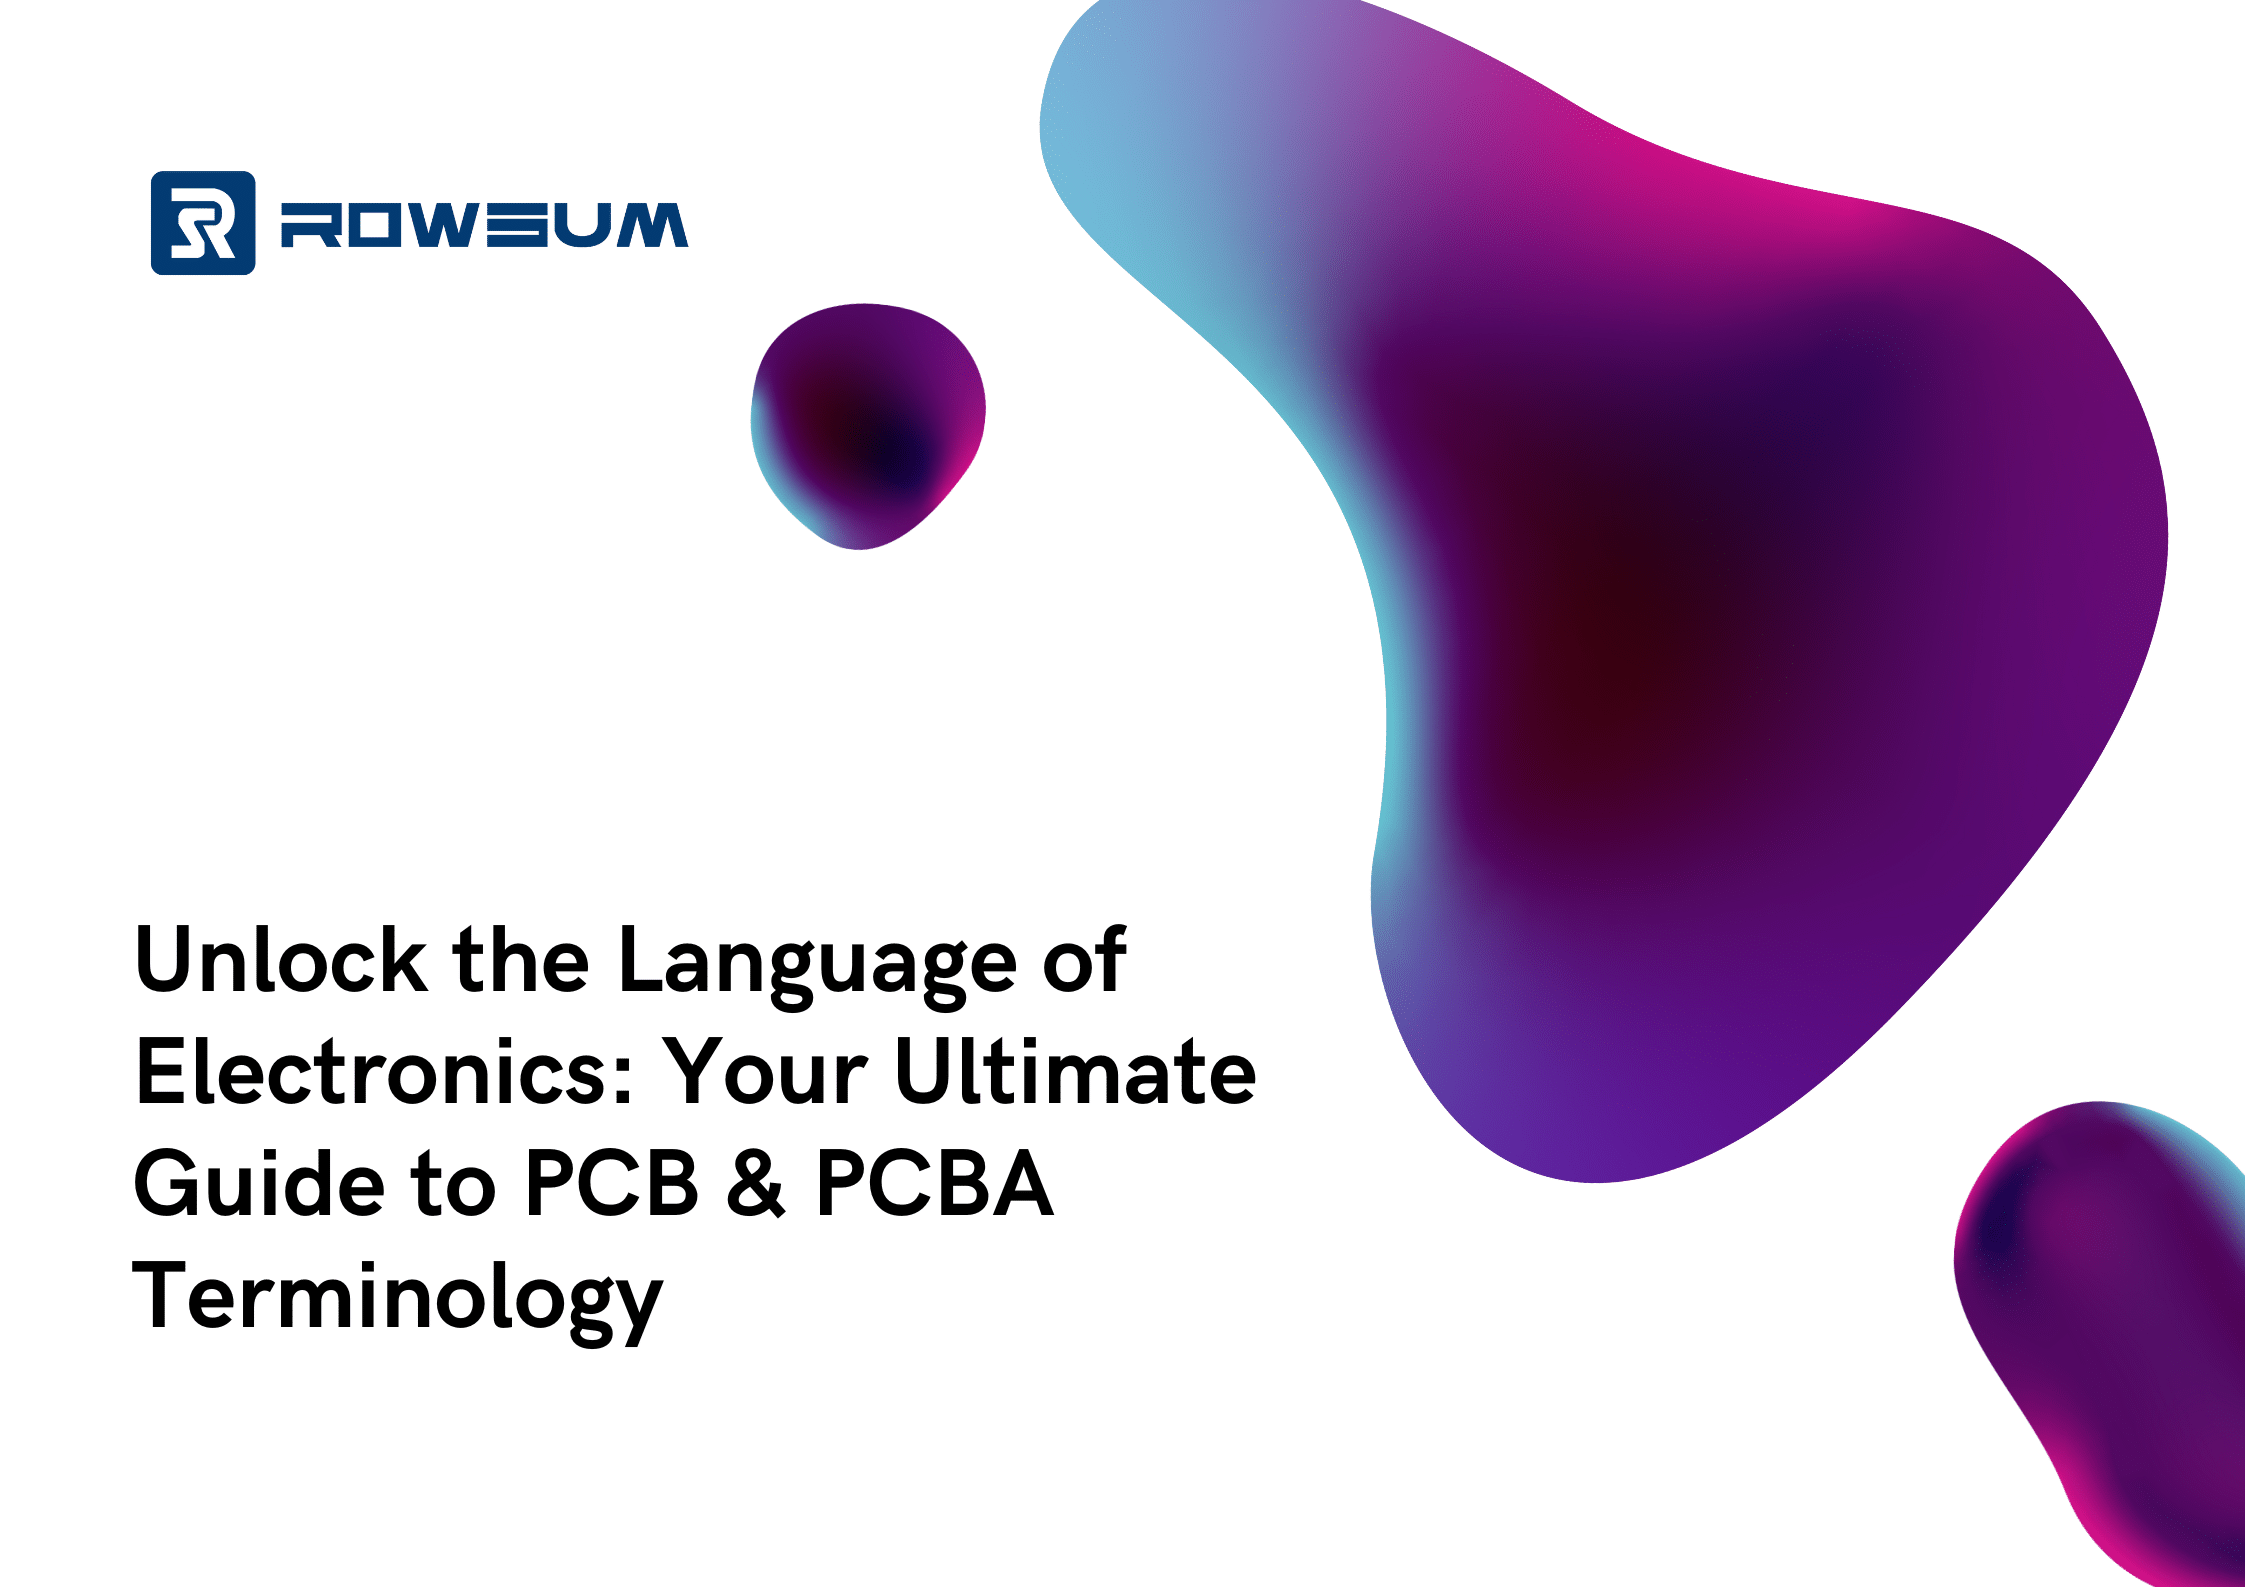 débloquez le langage de l'électronique votre guide ultime de la terminologie PCB et PCBA